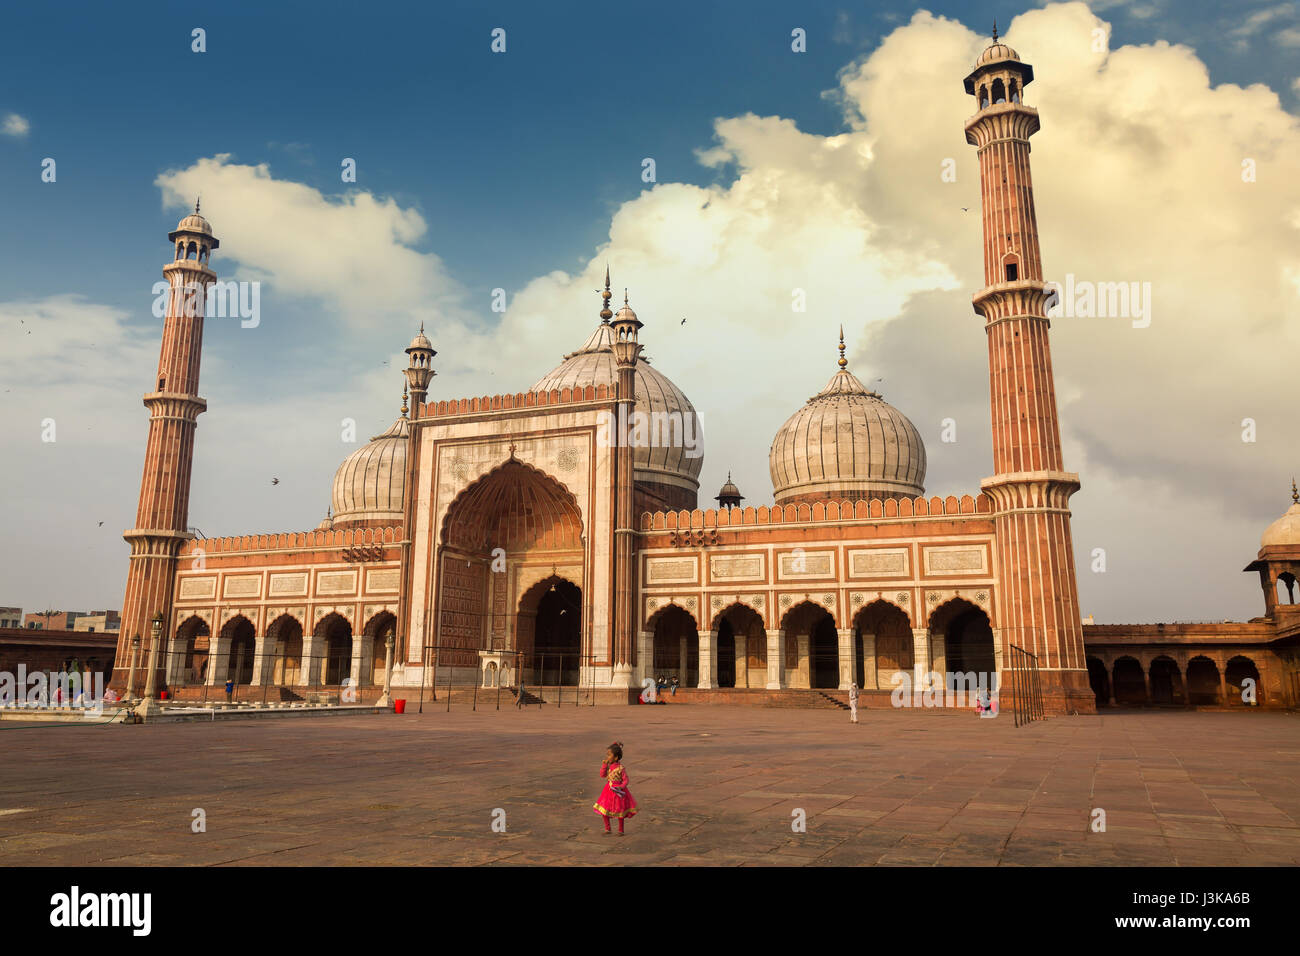 La histórica mezquita de Jama Masjid, también conocida como la mezquita Masjid-i Jahan-Numa en Delhi es una de las mezquitas más grandes de la India, construida por el emperador Shah Jahan de Mughal. Foto de stock